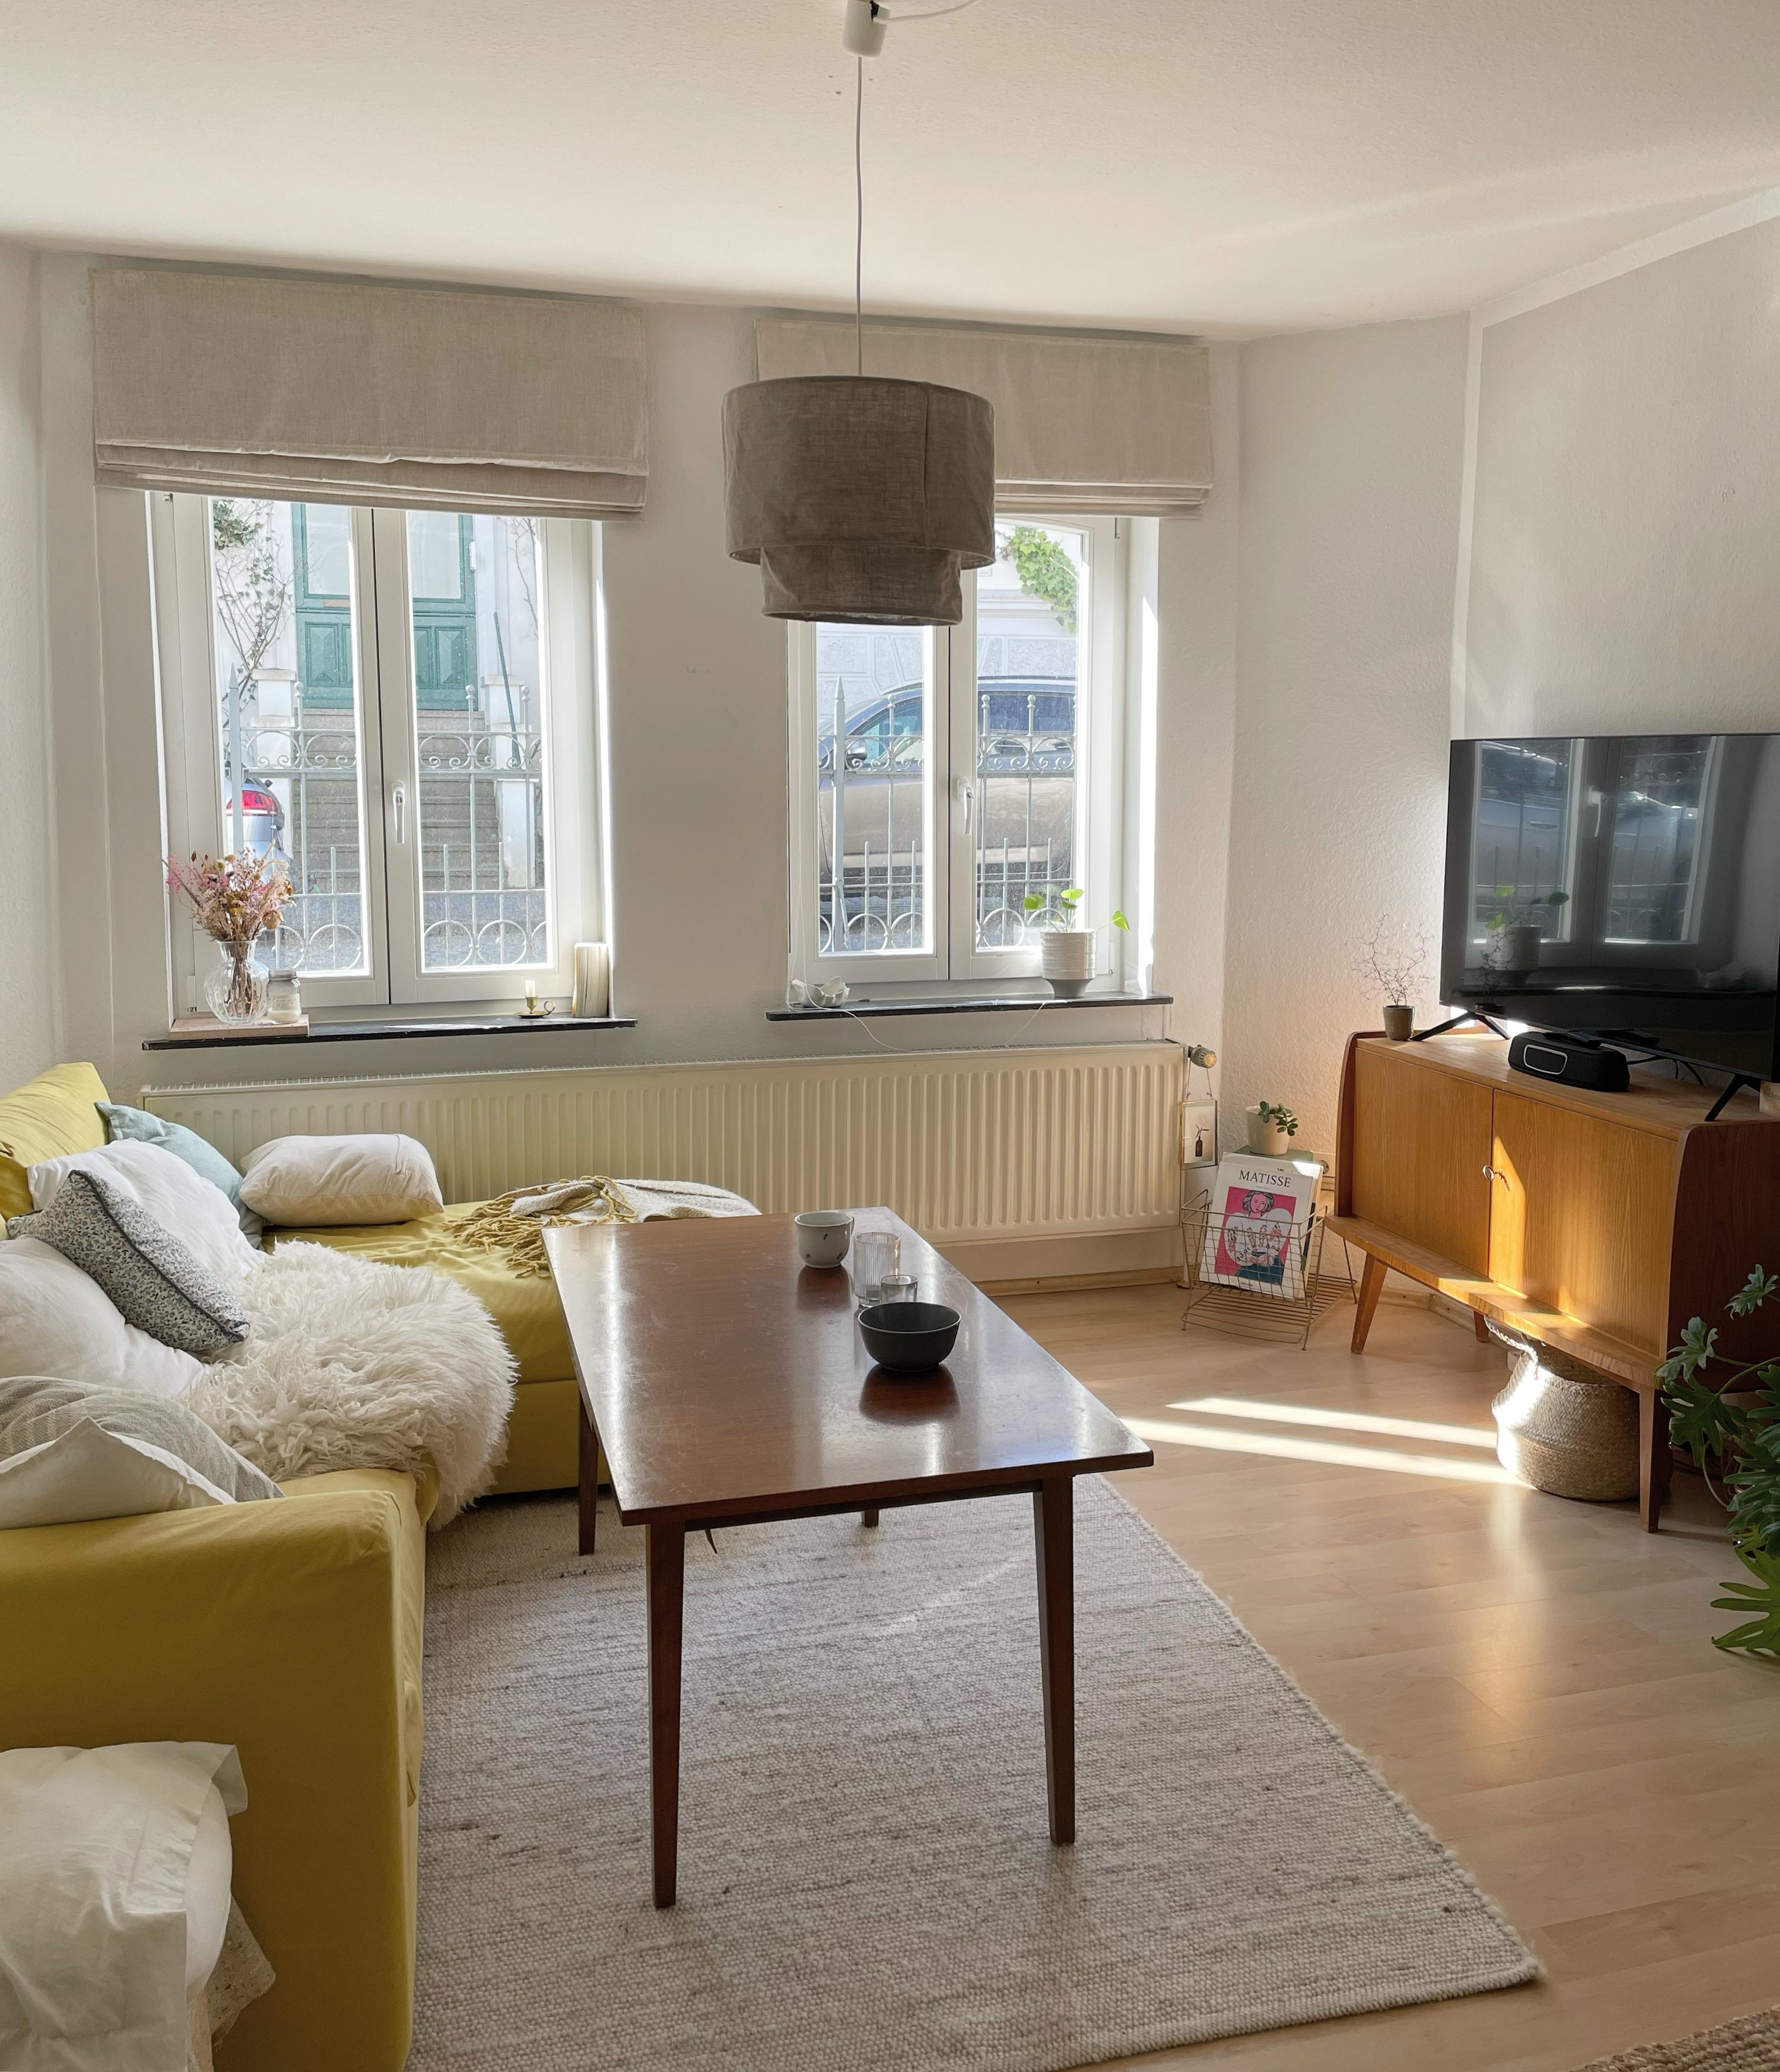 #couchliebt #wohnzimmer #couchSTYLE #interior #altbau